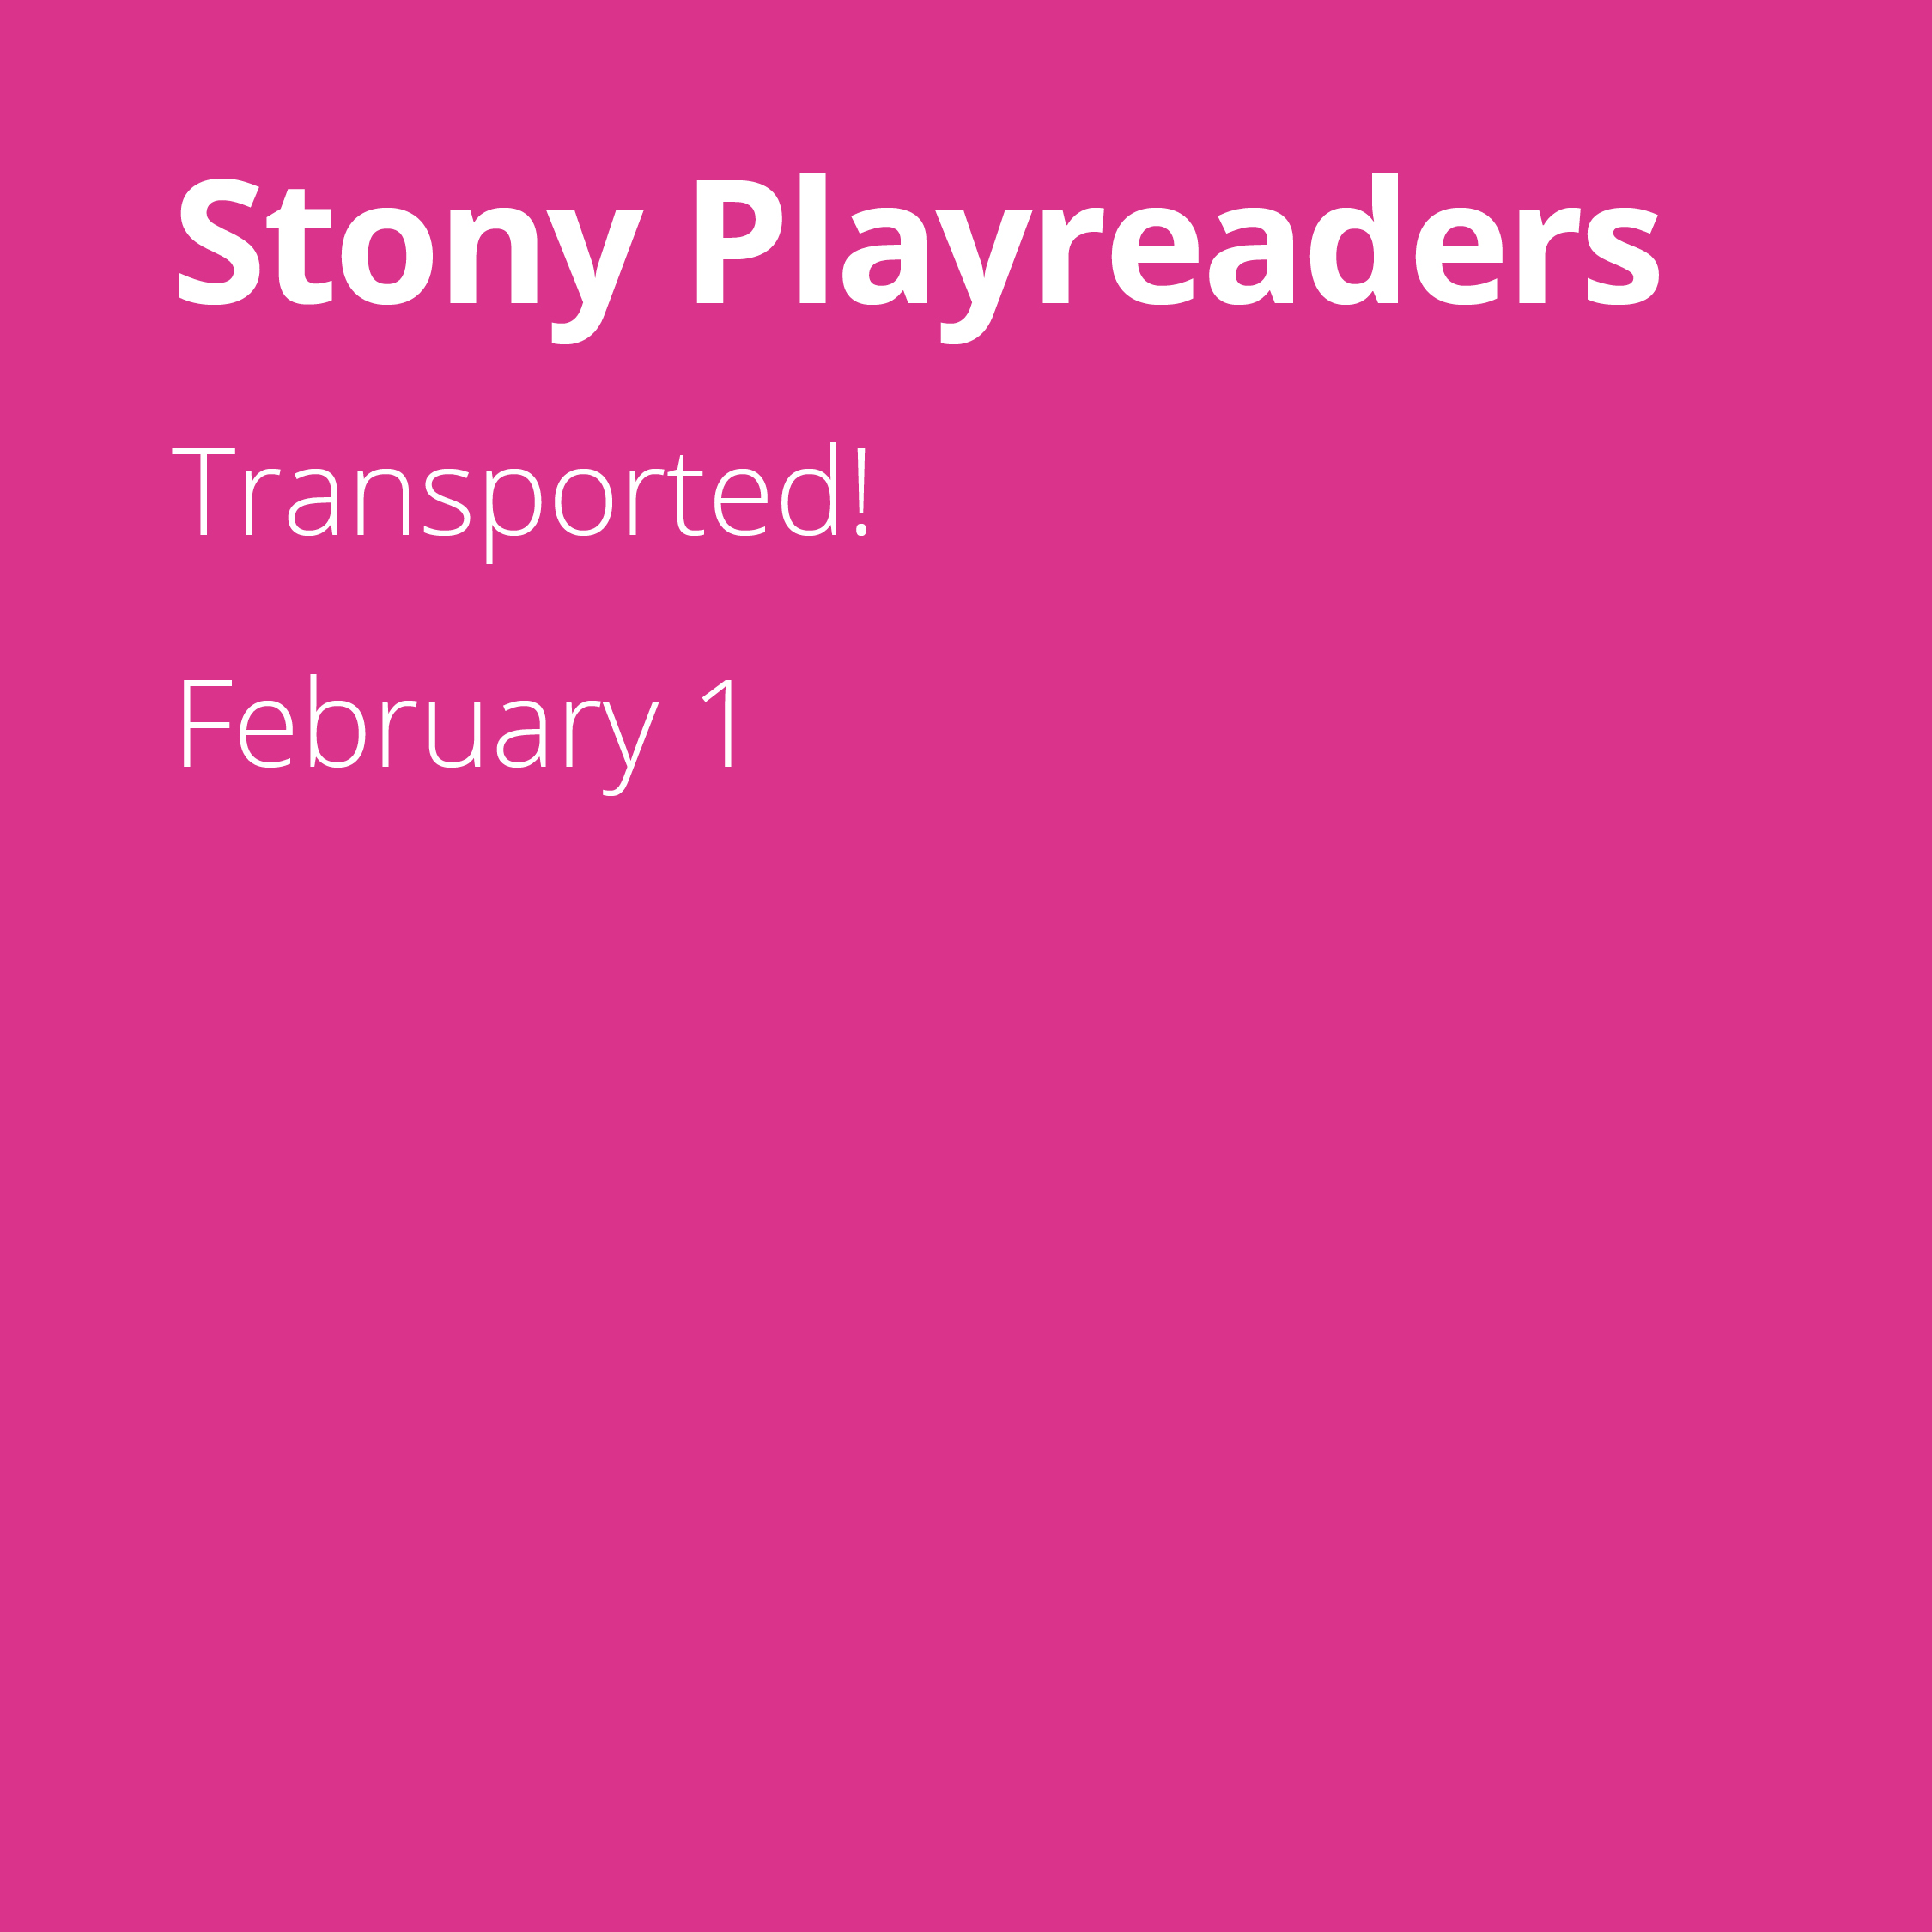 Stony Playreaders